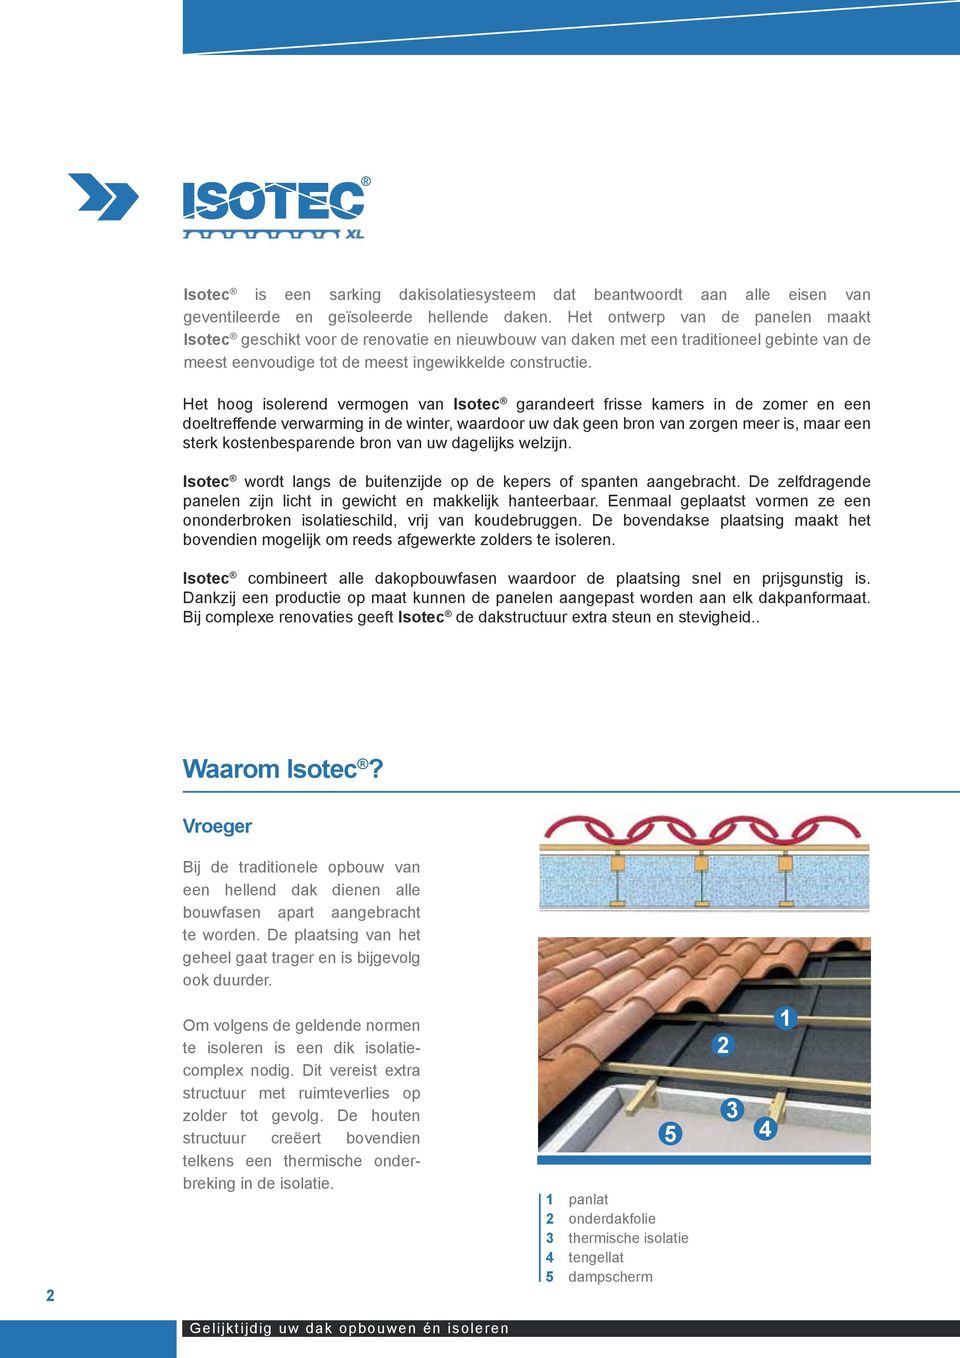 Het hoog isolerend vermogen van Isotec garandeert frisse kamers in de zomer en een doeltreffende verwarming in de winter, waardoor uw dak geen bron van zorgen meer is, maar een sterk kostenbesparende